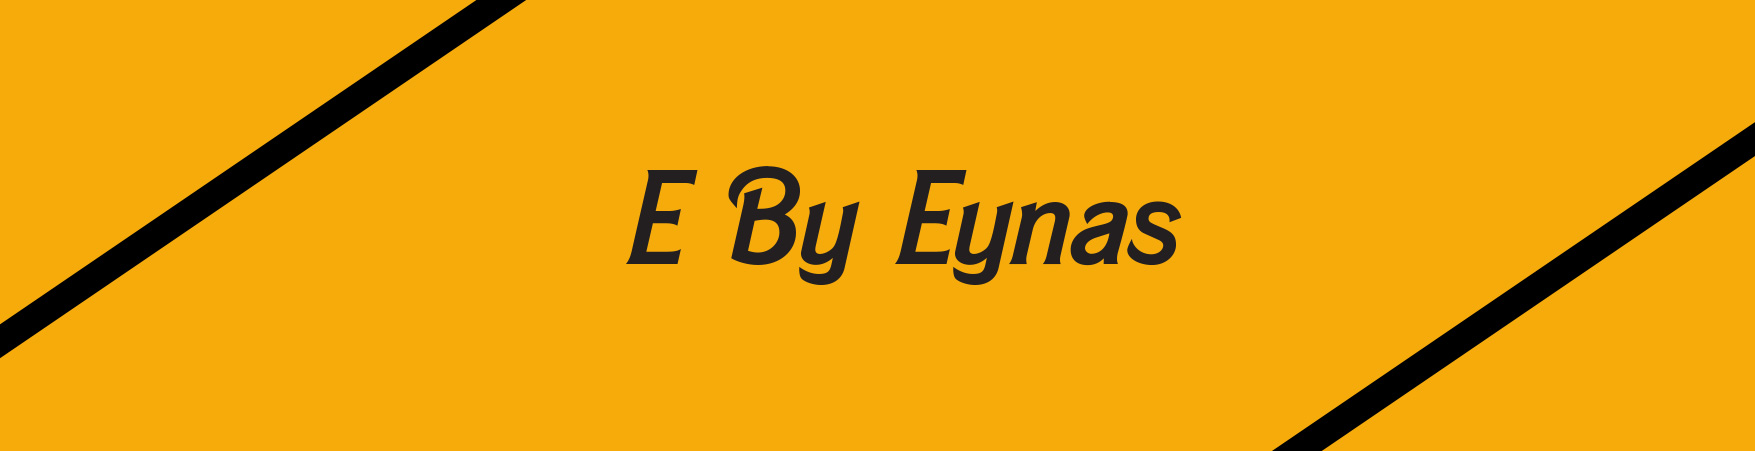 E by Eynas